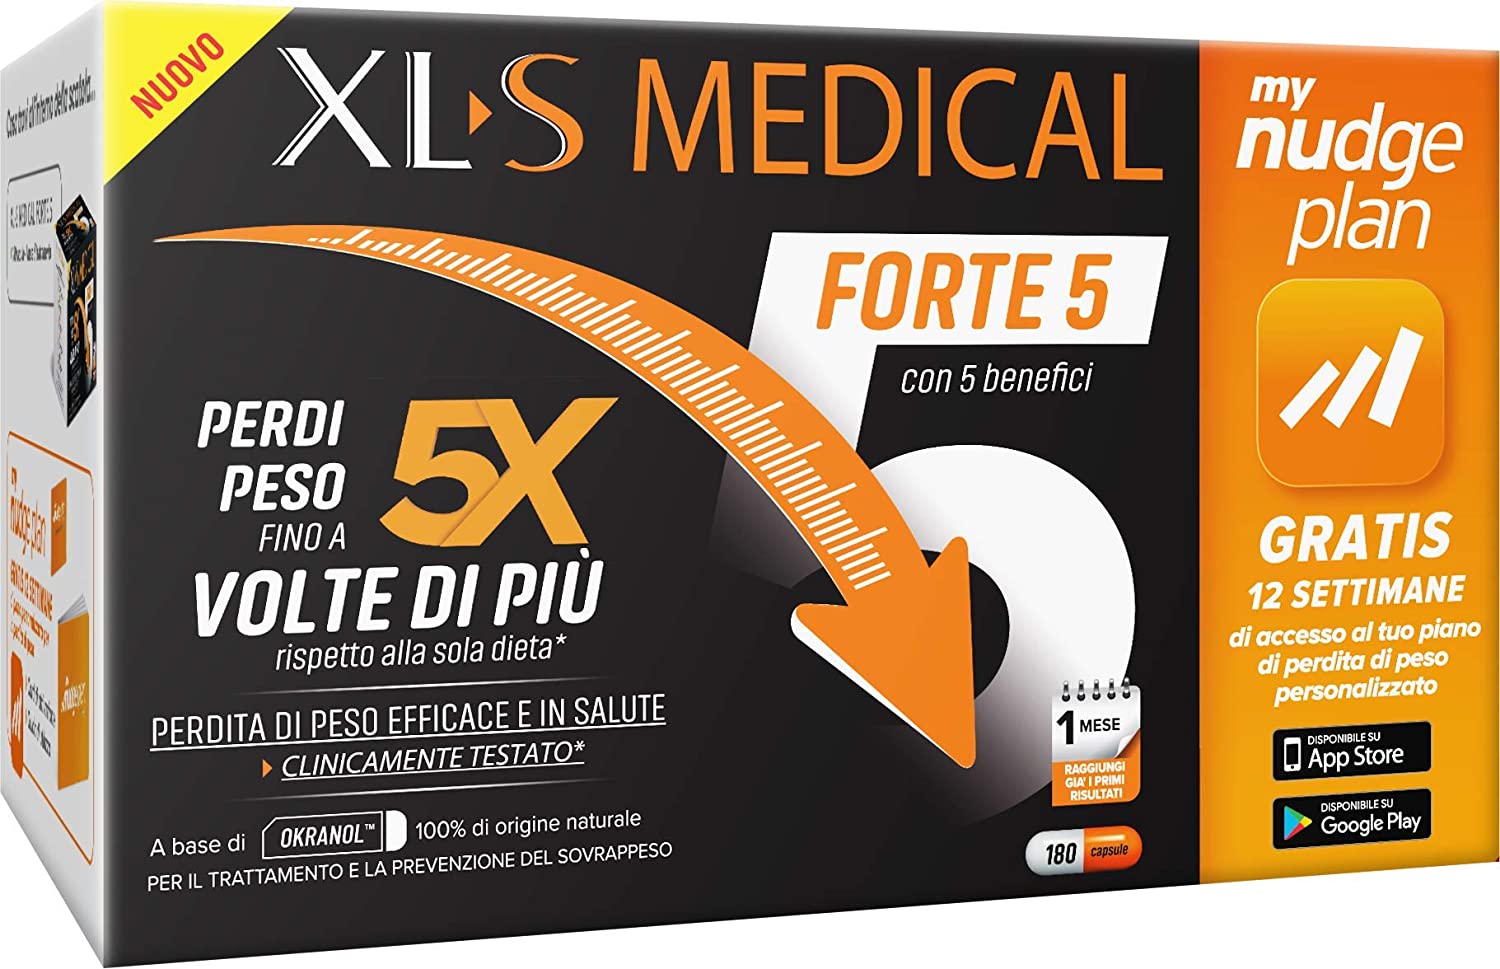 XL-S MEDICAL Forte 5 Pastiglie Dimagranti Forte, Trattamento Dimagrante con 5 Benefici in 1, App My Nudge Plan Inclusa, 180 Compresse